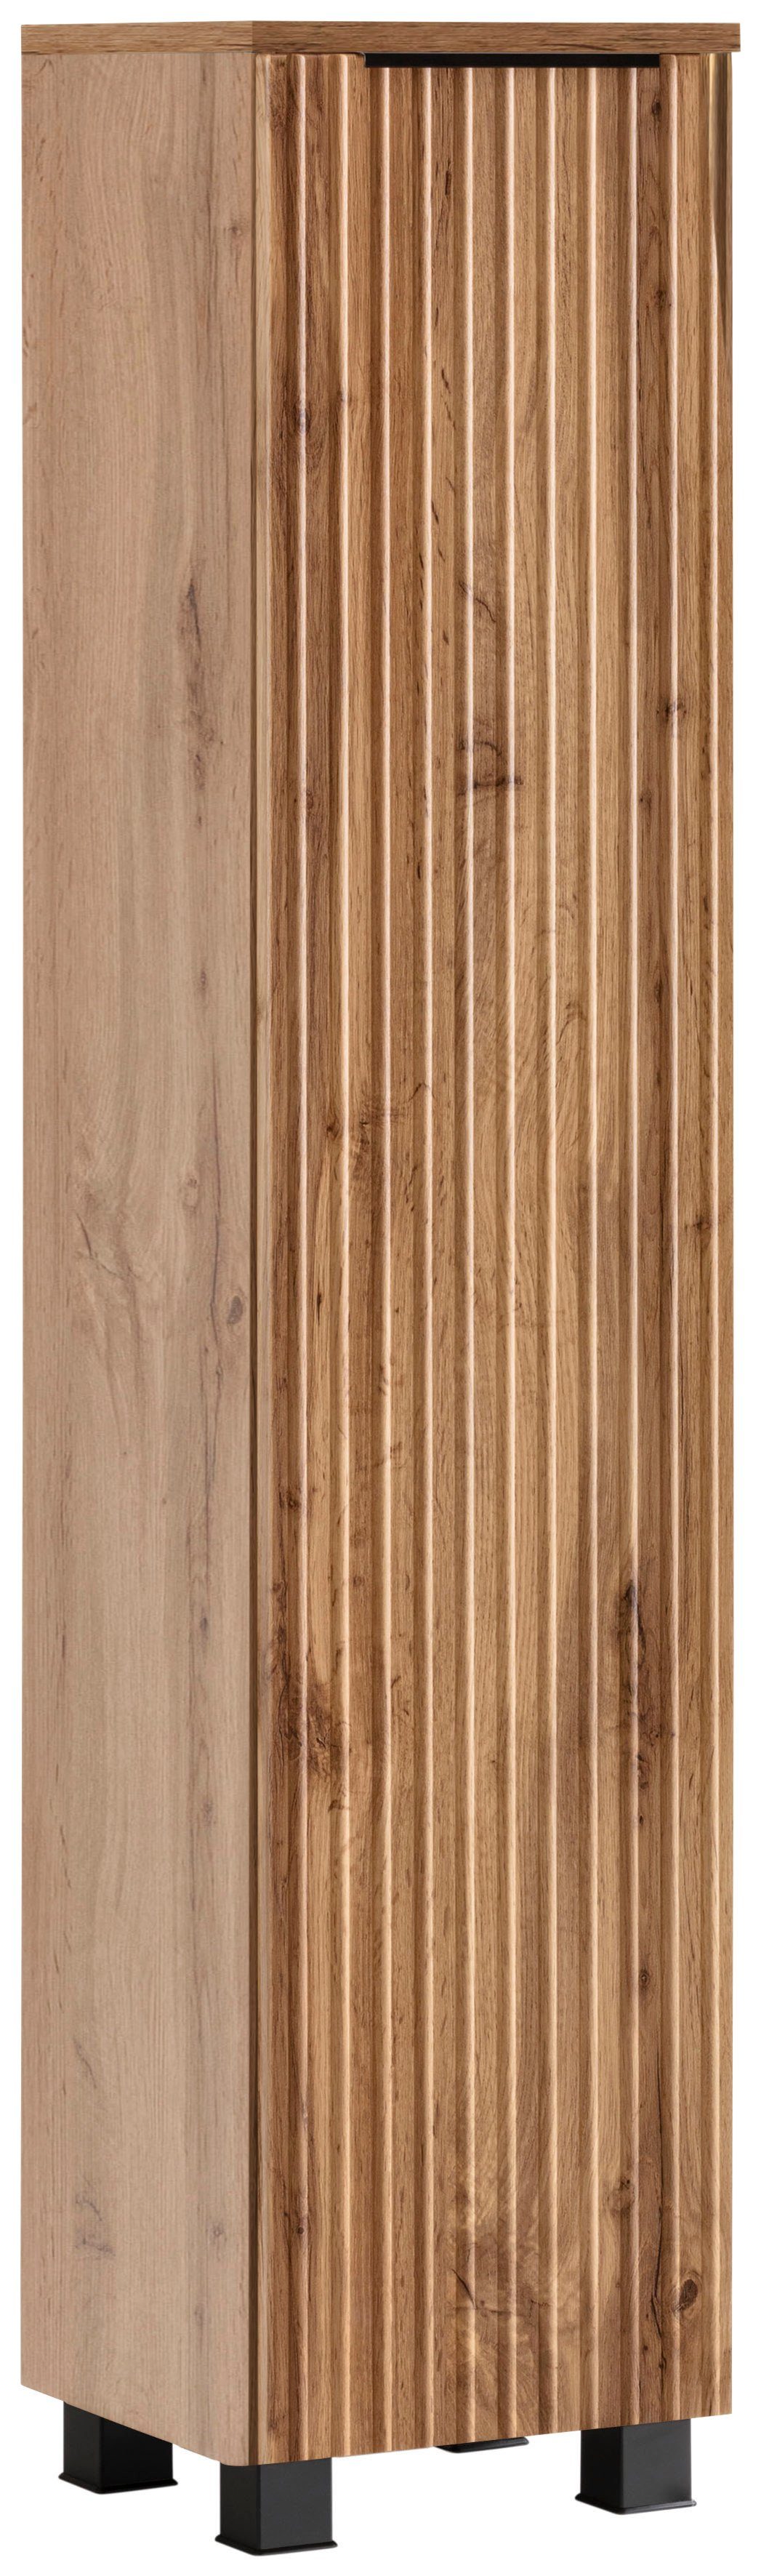 HELD MÖBEL Midischrank Trento, verschiedene Ausführungen und Farben Badmöbel,  Breite 30 cm, 1 Tür, Made in Germany